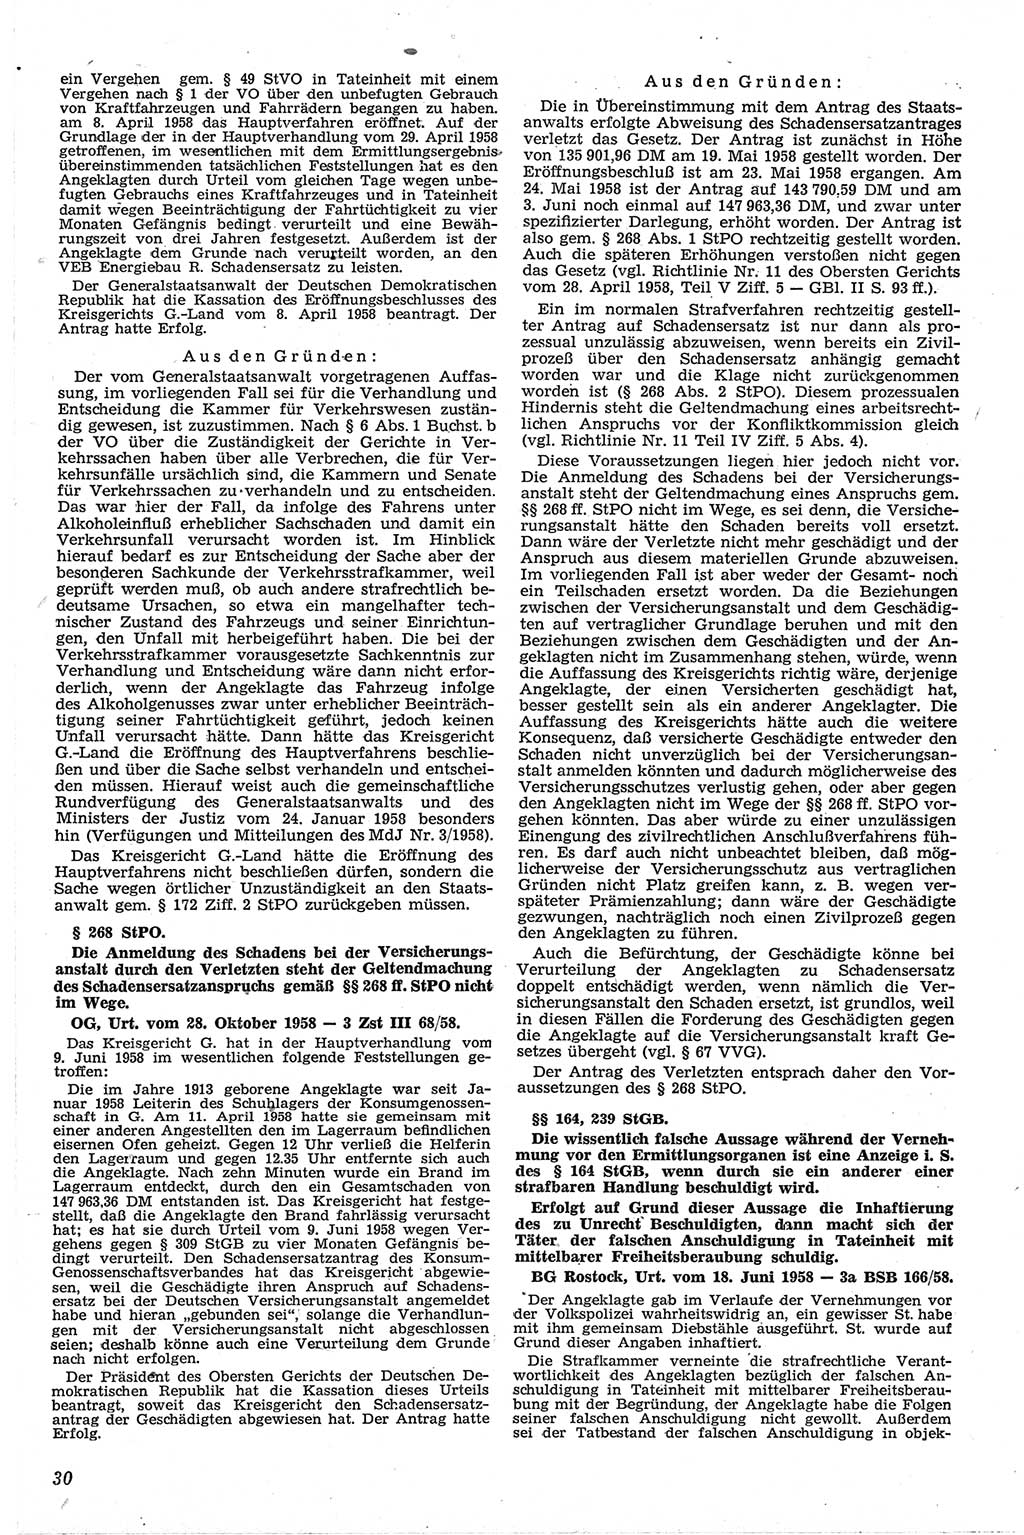 Neue Justiz (NJ), Zeitschrift für Recht und Rechtswissenschaft [Deutsche Demokratische Republik (DDR)], 13. Jahrgang 1959, Seite 30 (NJ DDR 1959, S. 30)